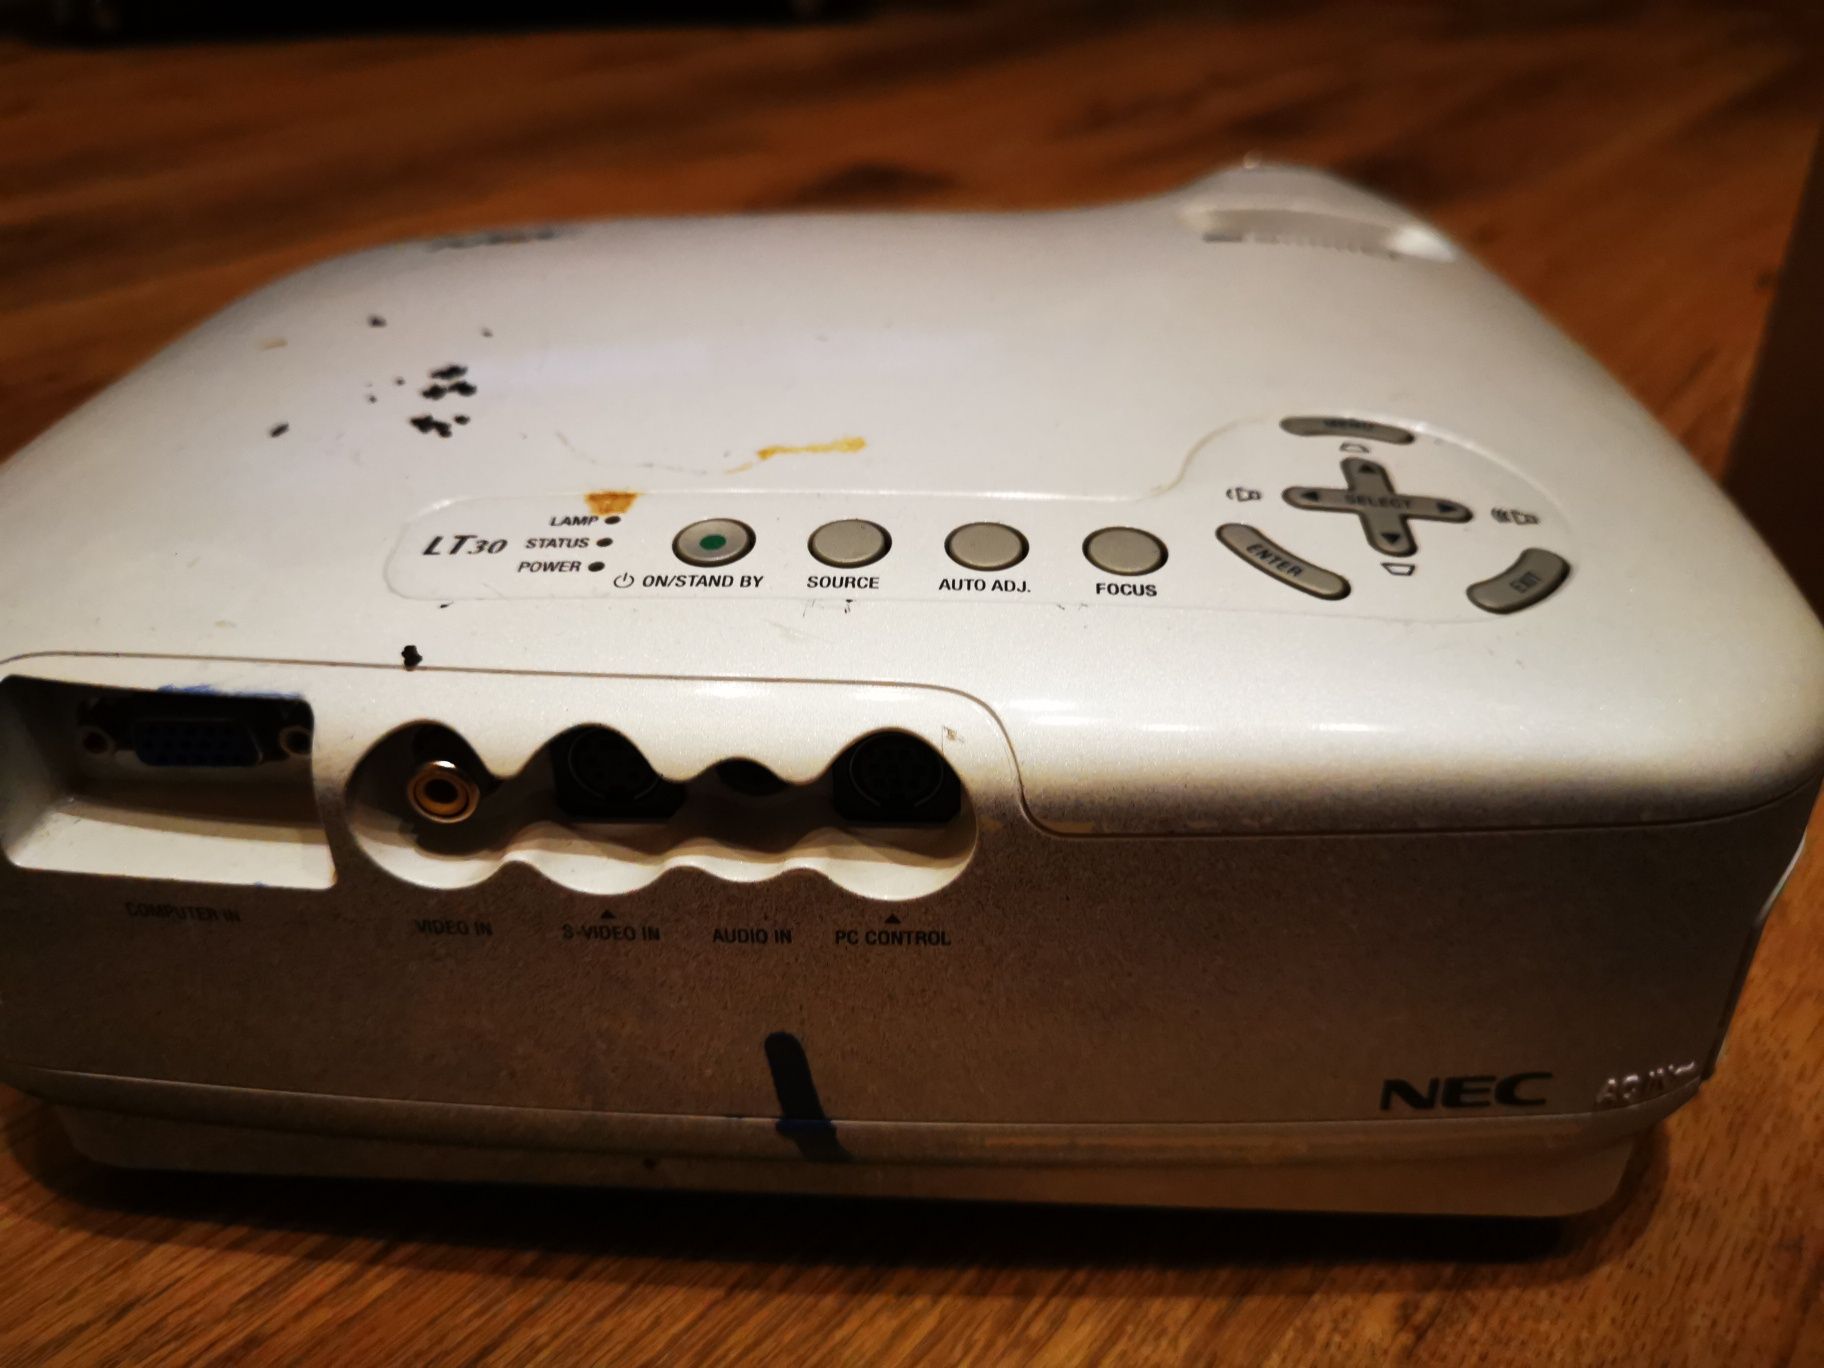 Домашний проектор NEC LT30